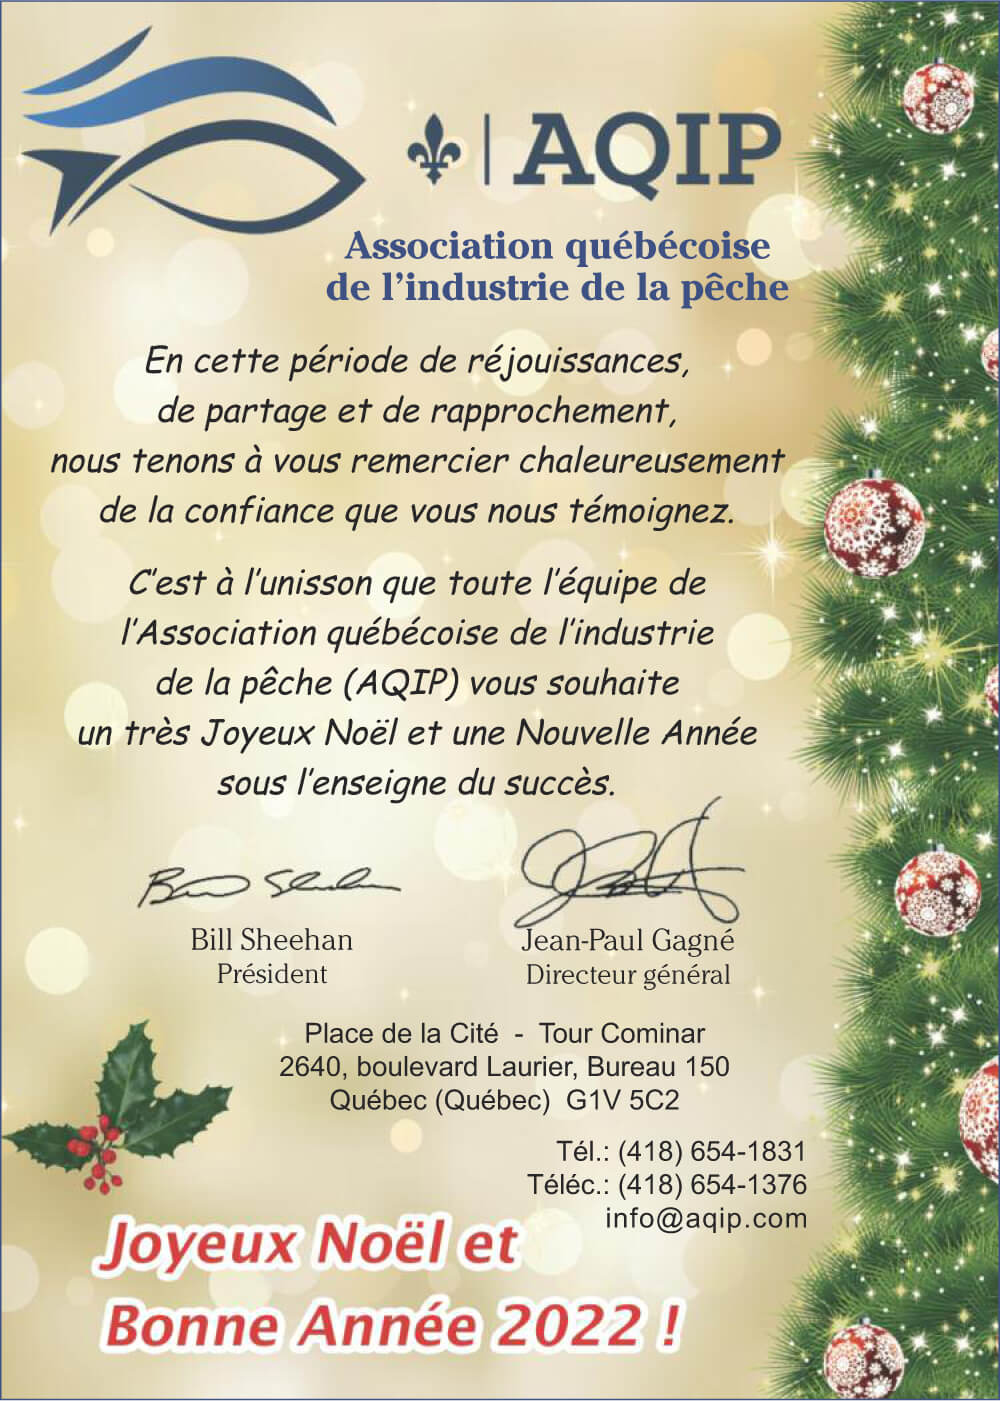 AQIP Association québécoise de l'industrie de la pêche